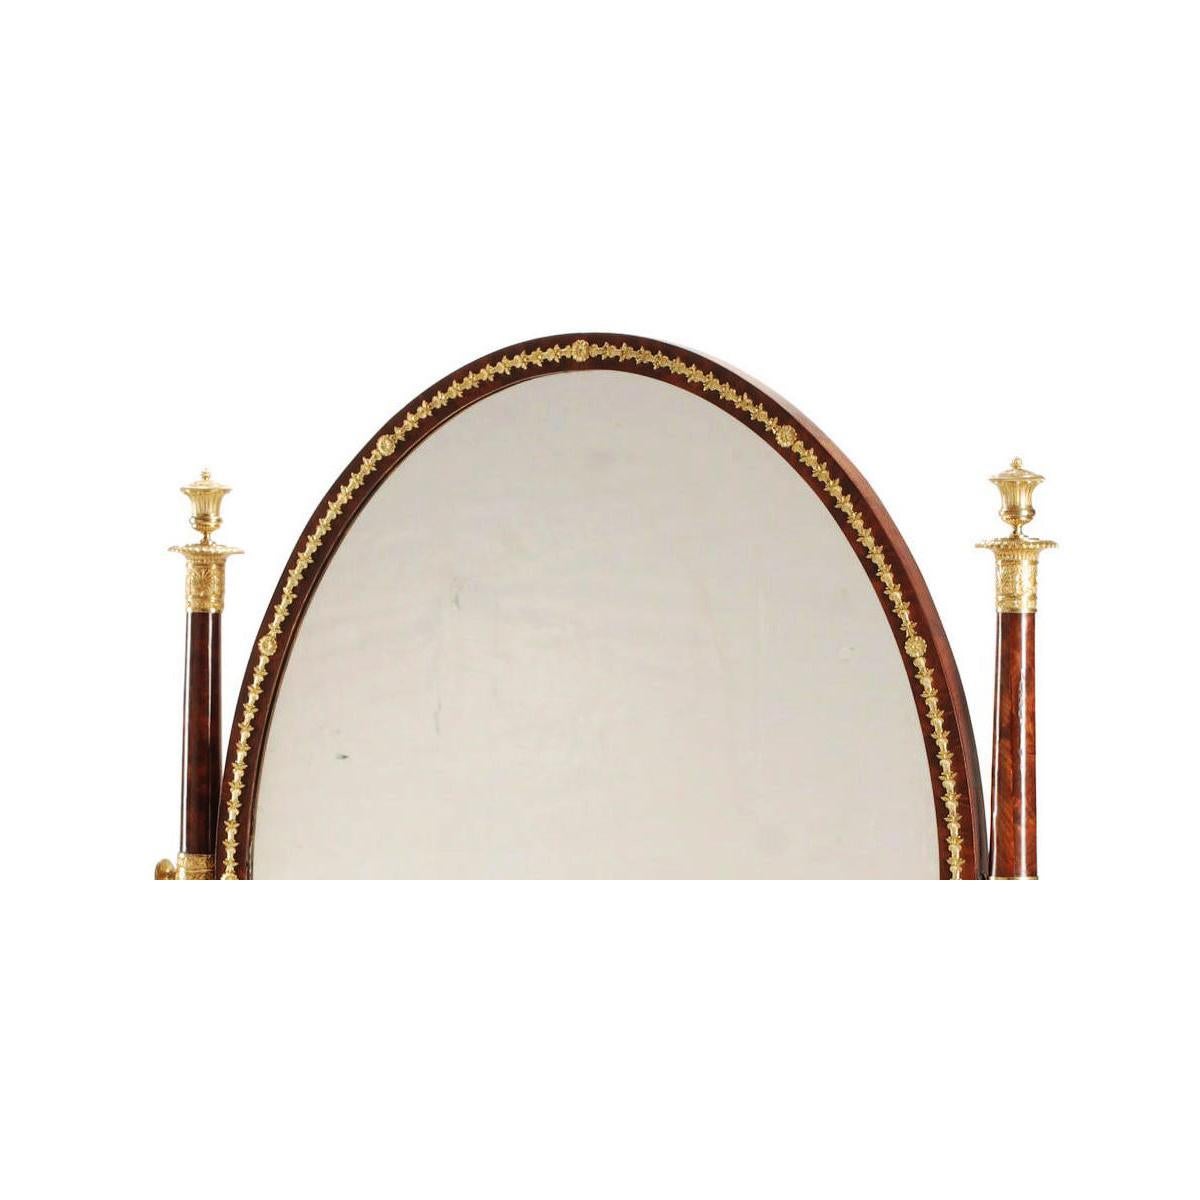 Eine sehr feine Französisch 19. Jahrhundert Napoleon III Empire-Stil Mahagoni und Ormolu montiert freistehende Cheval schwenkbaren Spiegel. Die oval gerahmte Spiegelplatte ist mit Lorbeerkränzen aus vergoldeter Bronze im Empire-Stil geschmückt,